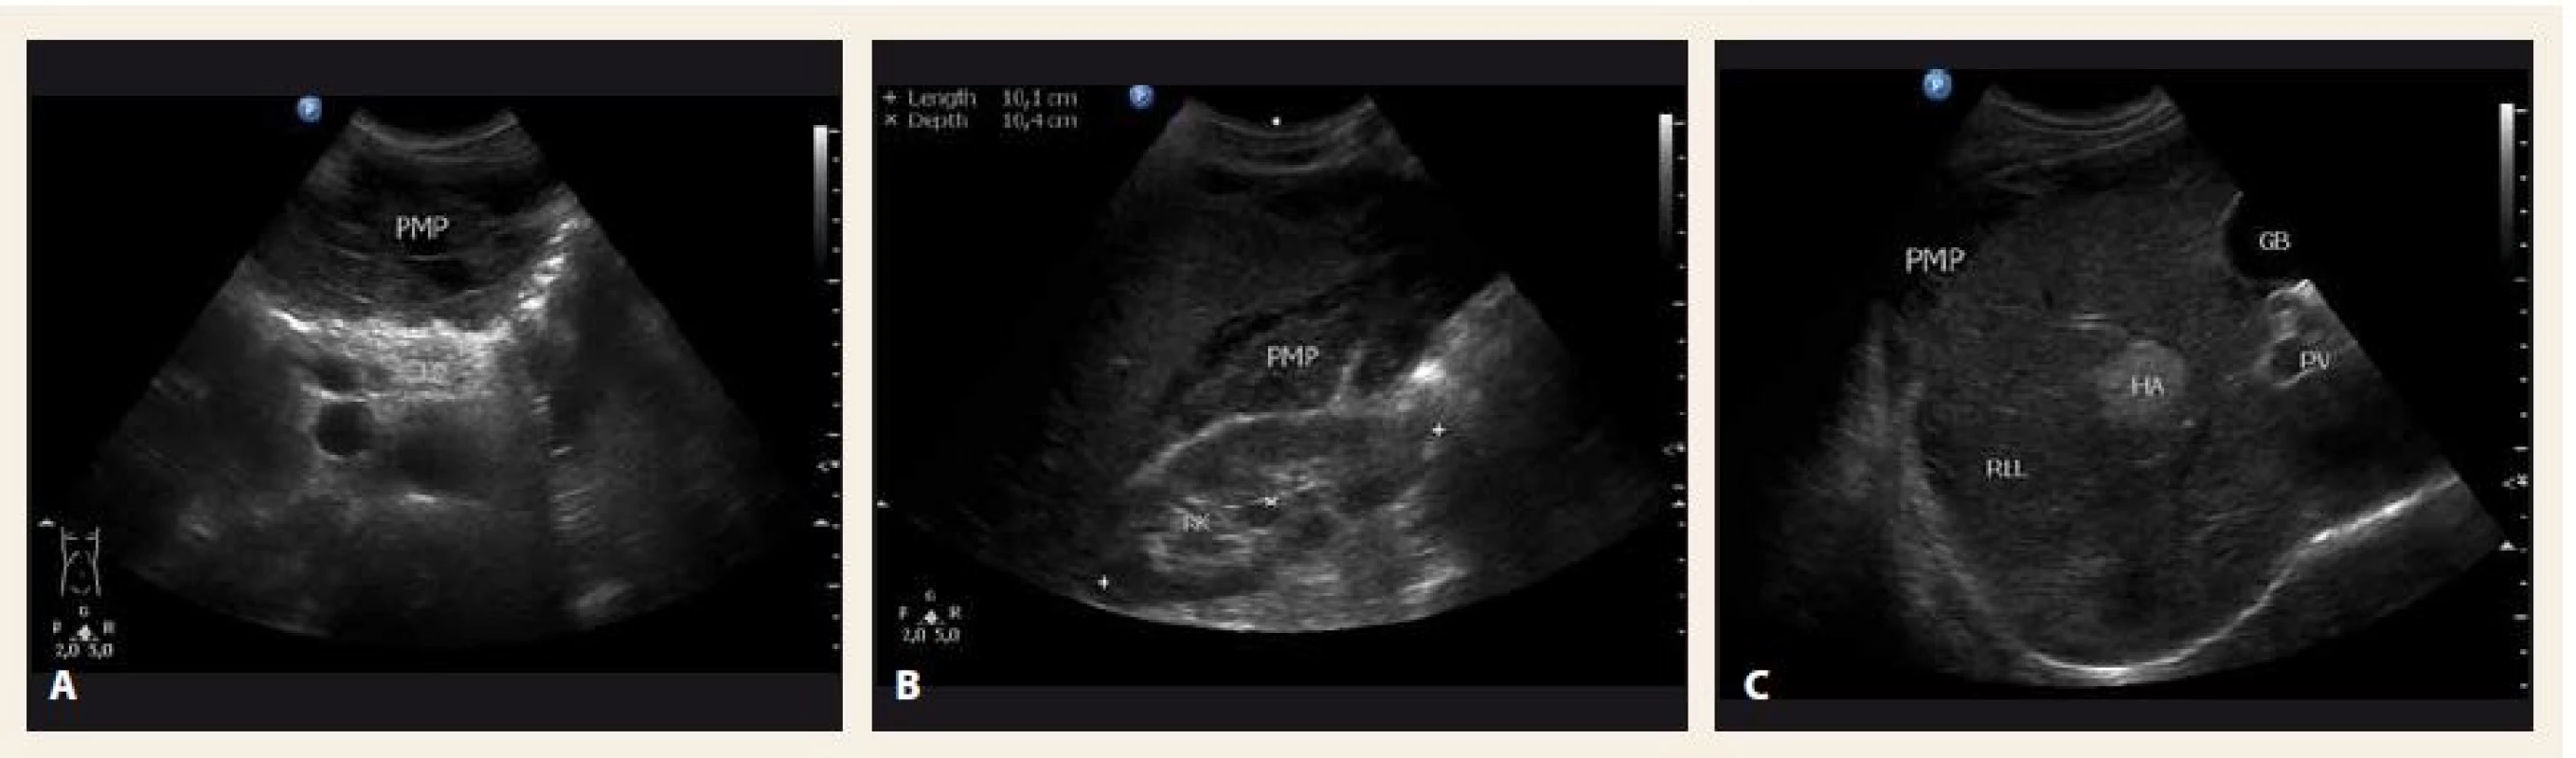 Sonografické vyšetření břicha v době diagnózy – A. příčný řez epigastriem; B. hmoty pseudomyxomu peritonea (PMP) mezi pravou ledvinou (RK) a pravým jaterním lalokem (RLL); C. RLL. 
PB – tělo pankreatu, HA – hemangiom, GB – žlučník
Fig. 2. Abdominal ultrasound at the time of diagnosis – A. transverse section; B. mucinous material of pseudomyxoma peritonei (PMP) between the right kidney (RK) and the right liver lobe (RLL); C. RLL. 
PB – pancreas body, HA – hemangioma, GB – gallbladder